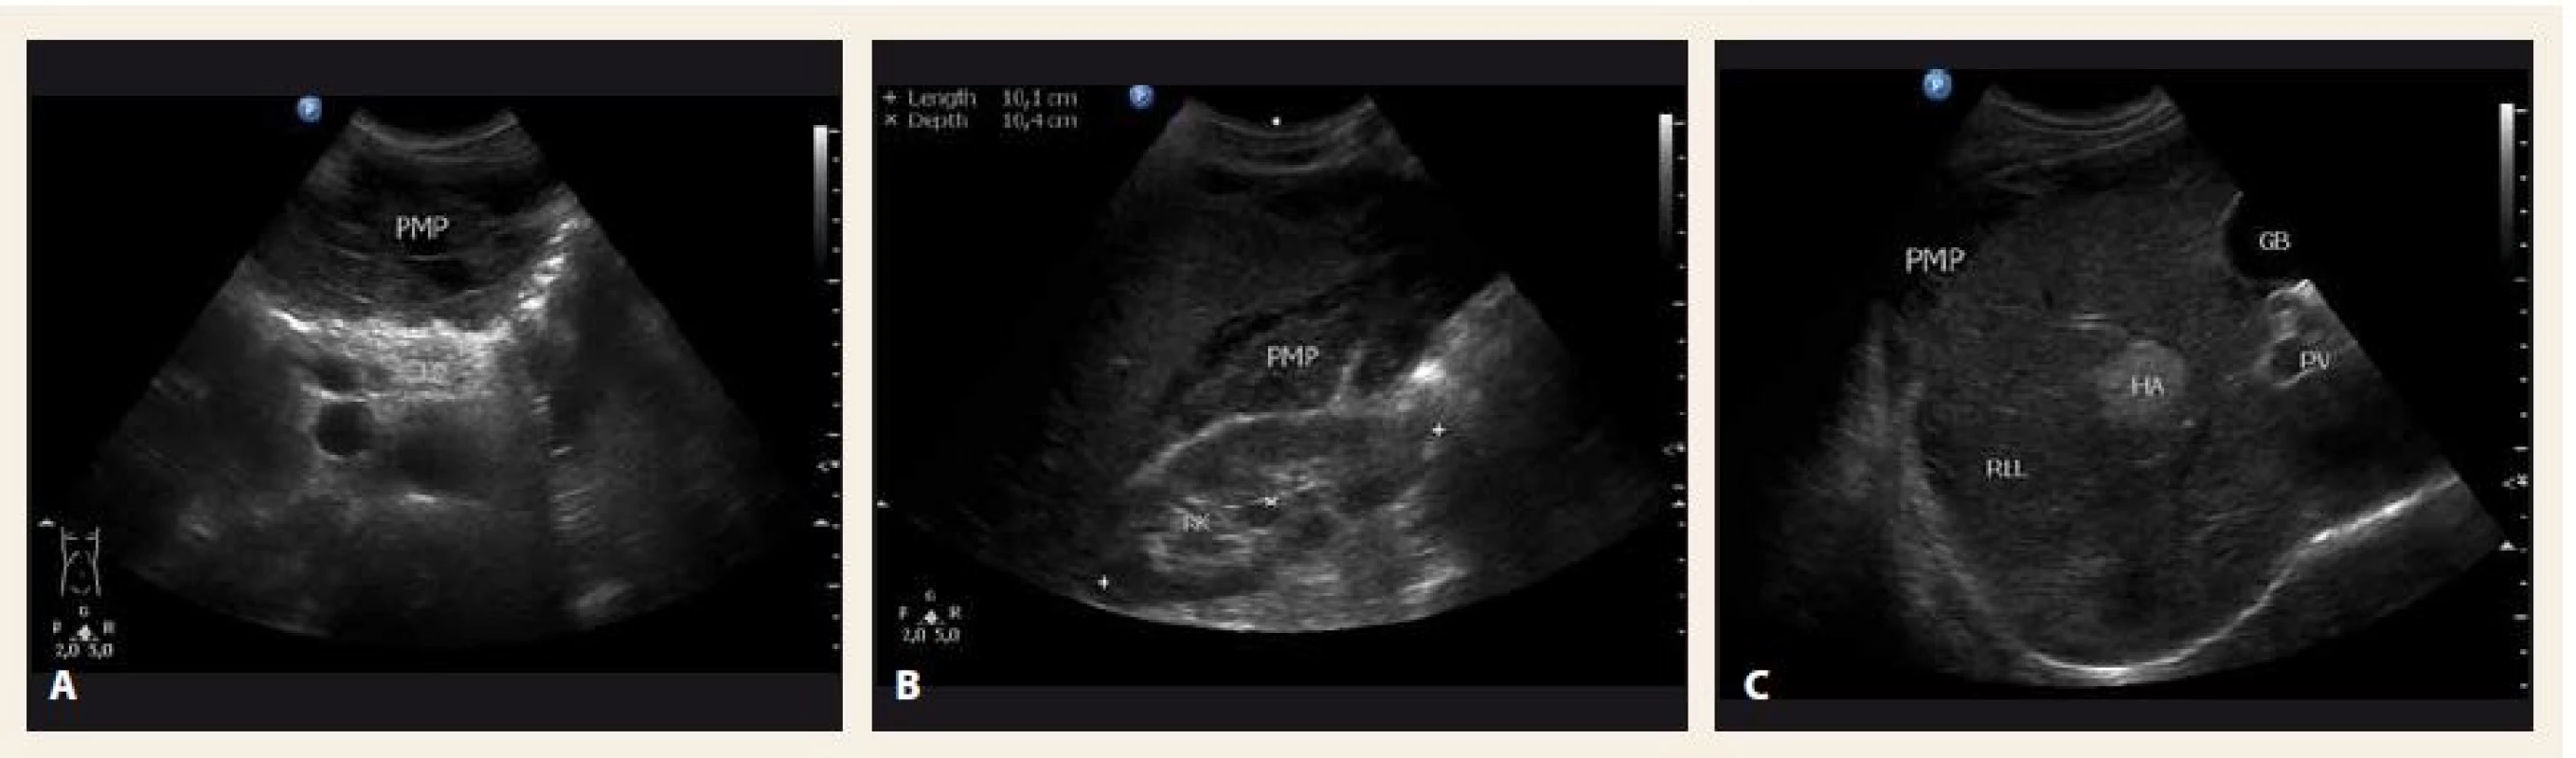 Sonografické vyšetření břicha v době diagnózy – A. příčný řez epigastriem; B. hmoty pseudomyxomu peritonea (PMP) mezi pravou ledvinou (RK) a pravým jaterním lalokem (RLL); C. RLL. 
PB – tělo pankreatu, HA – hemangiom, GB – žlučník
Fig. 2. Abdominal ultrasound at the time of diagnosis – A. transverse section; B. mucinous material of pseudomyxoma peritonei (PMP) between the right kidney (RK) and the right liver lobe (RLL); C. RLL. 
PB – pancreas body, HA – hemangioma, GB – gallbladder